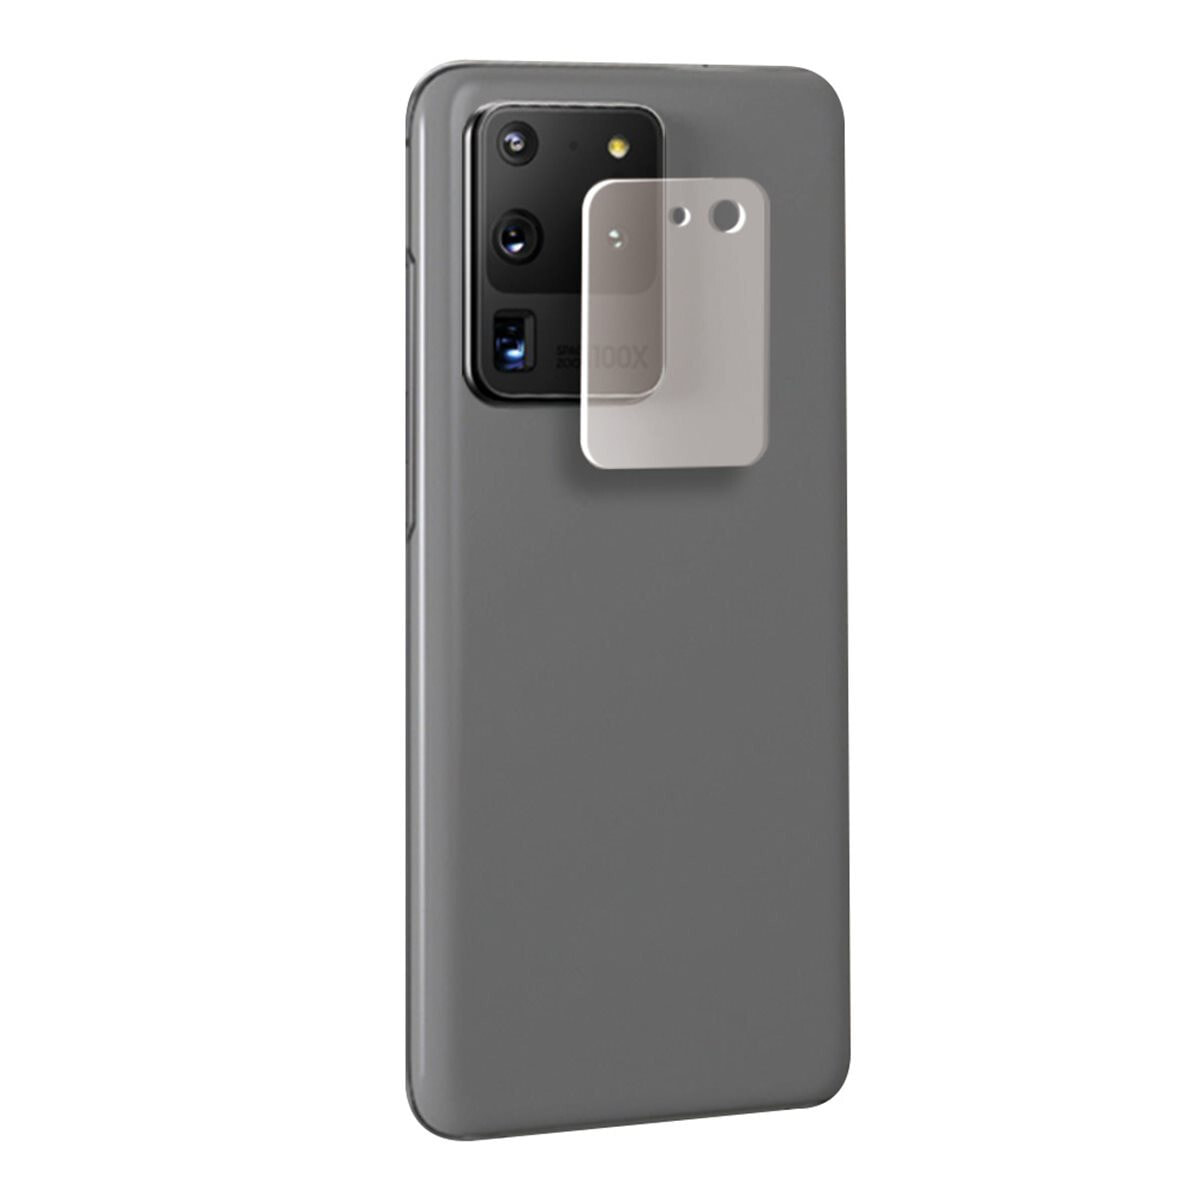 EIGER EGSP00605 протектор объектива камеры мобильного телефона Прозрачный Закаленное стекло 0,2 mm Samsung Galaxy S20 Ultra 5G